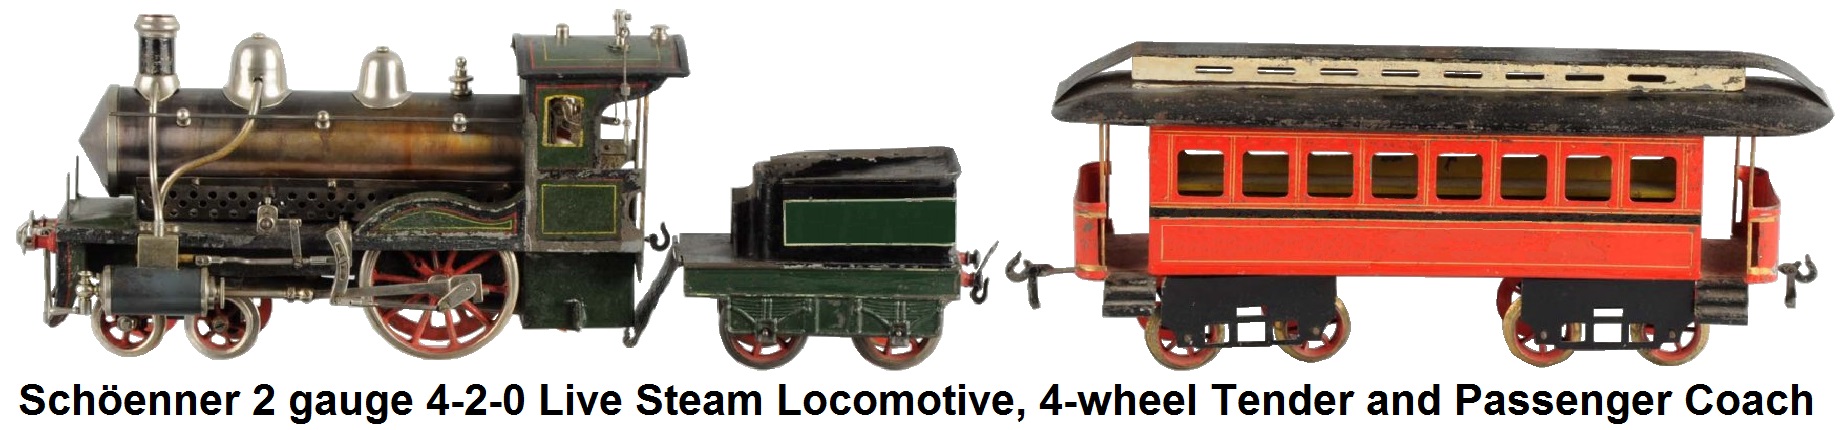 Schöenner #2 gauge 4-2-0 Live Steam Locomotive, 4-wheel Tender and Passenger coach